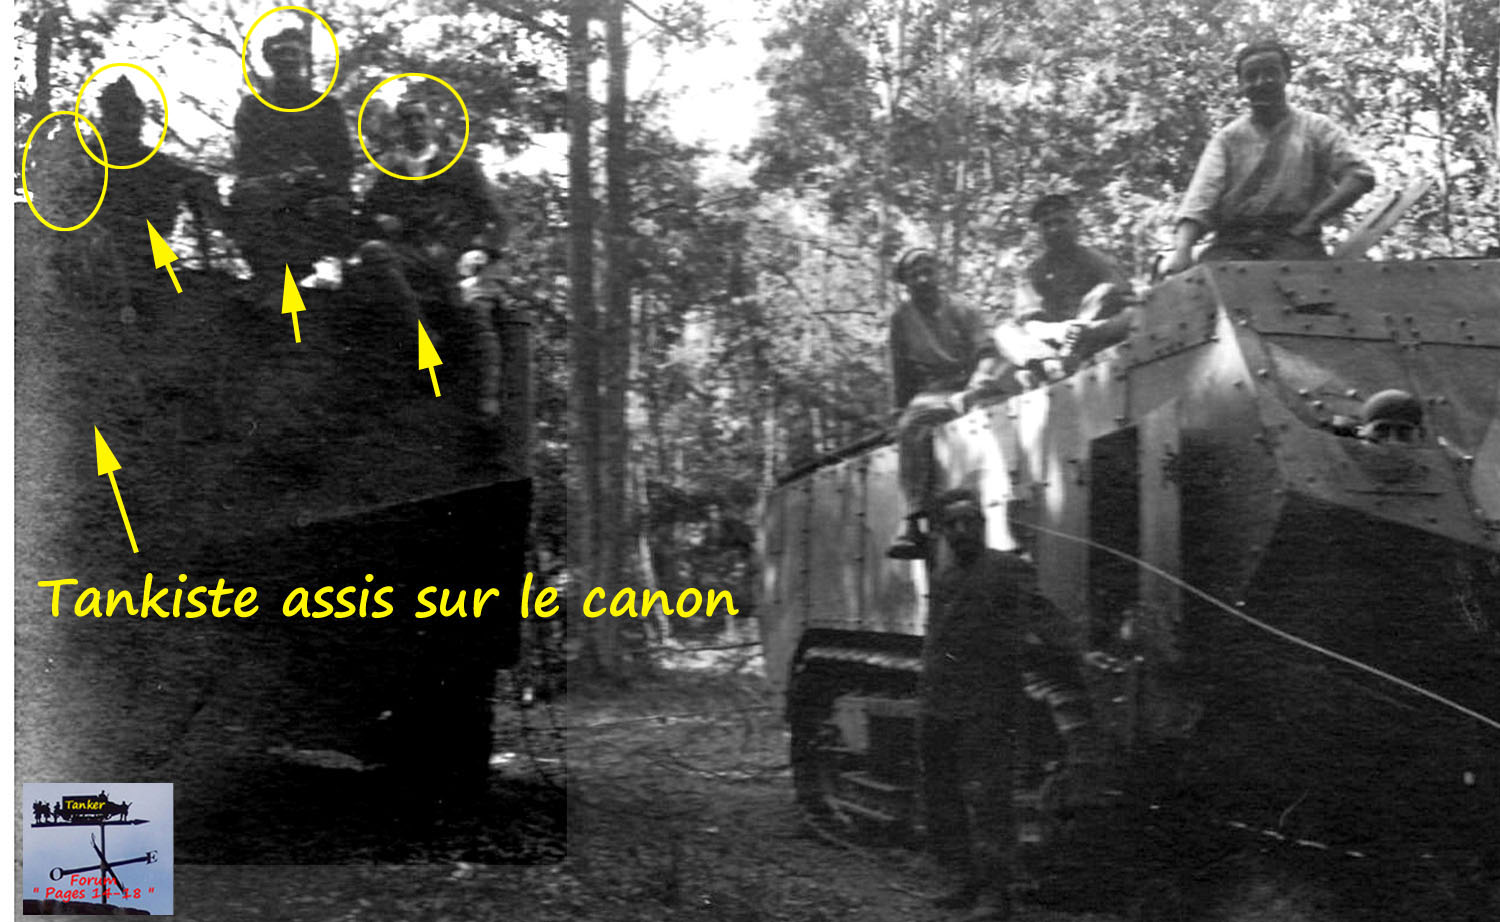 Grpt xx - AS xx - Saint Chamont M2 caisson n° 62562 (02a1).jpg